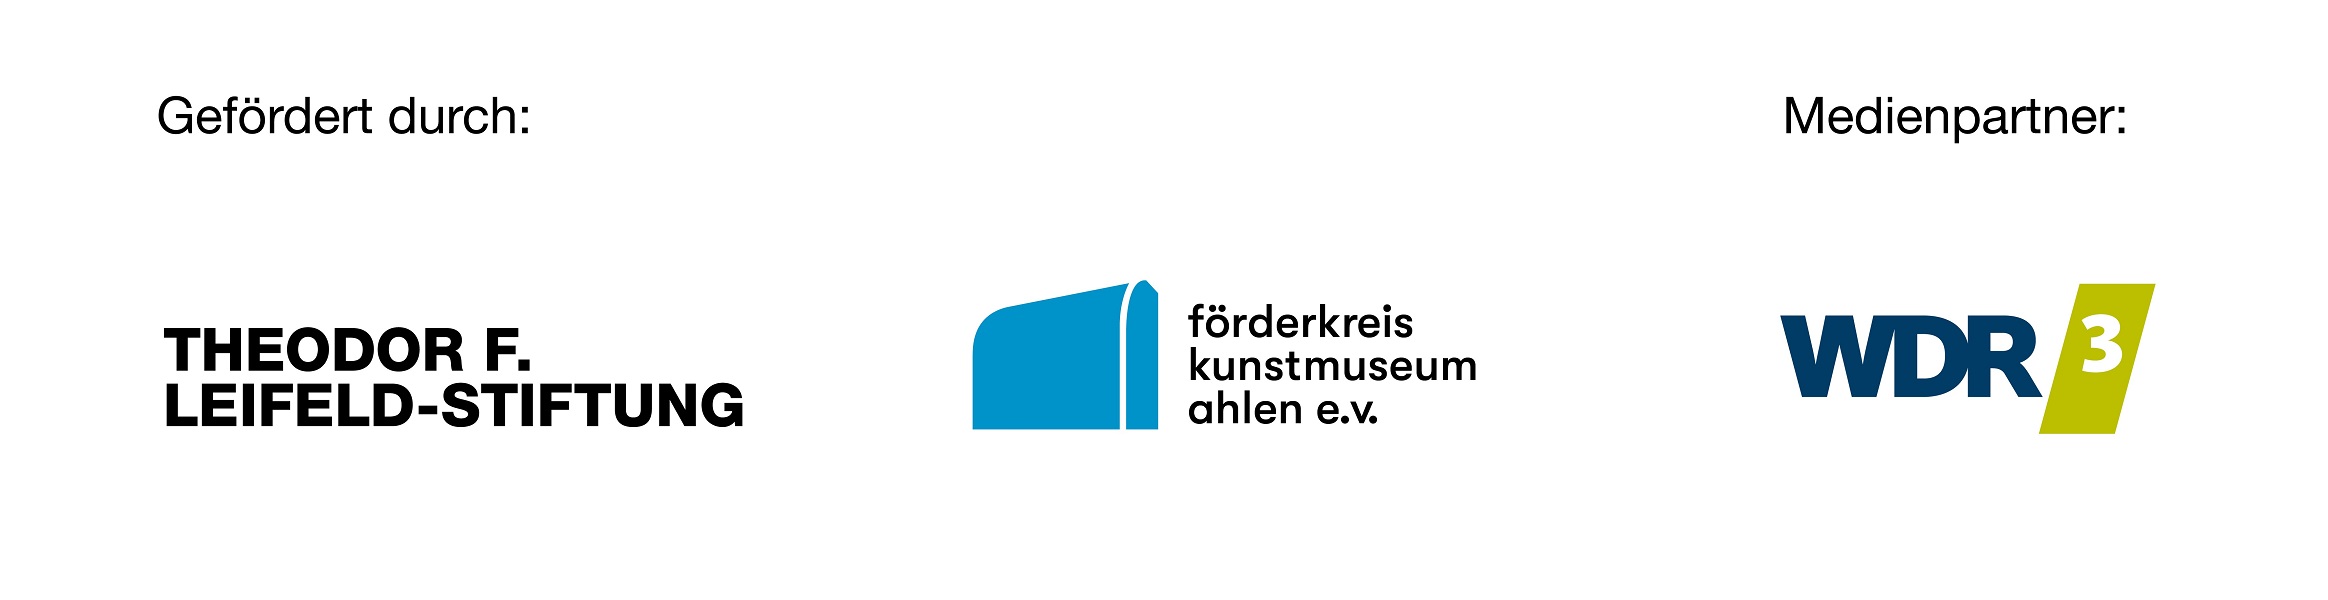 Logoleiste mit den Logos der Theodor F. Leifeld-Stiftung, des Förderkreis kunstmuseum ahlen e.V. und des Medienpartners WDR3